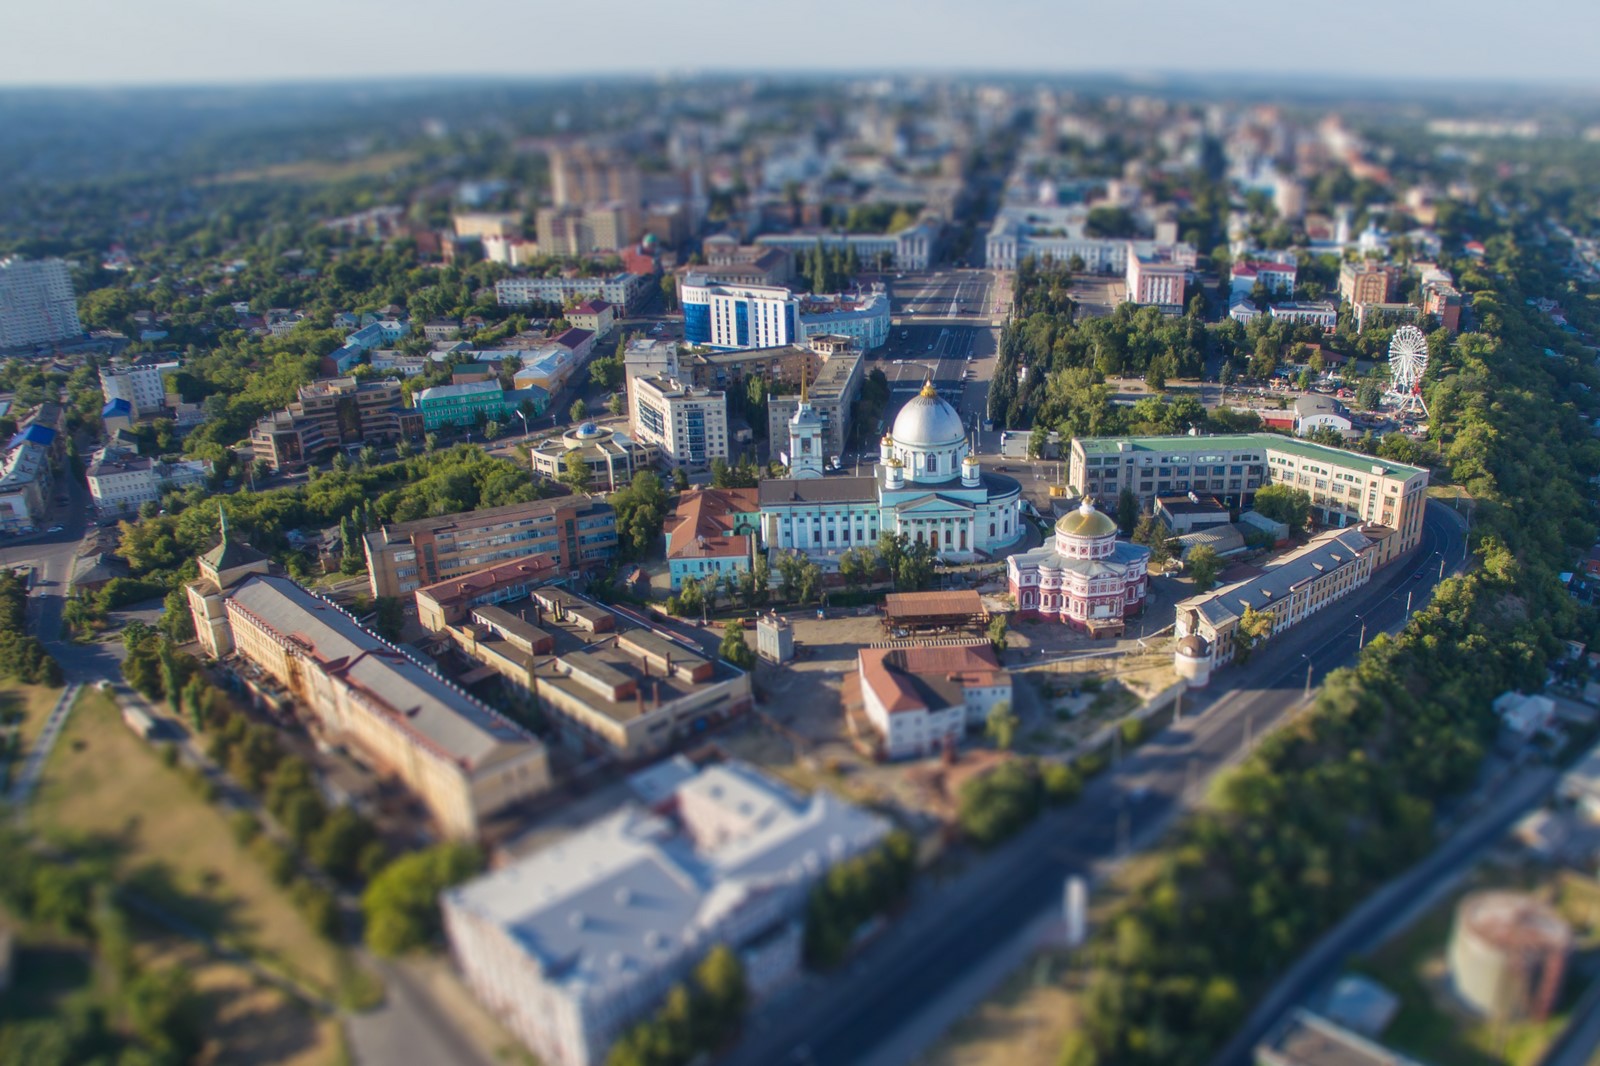 Город Курск